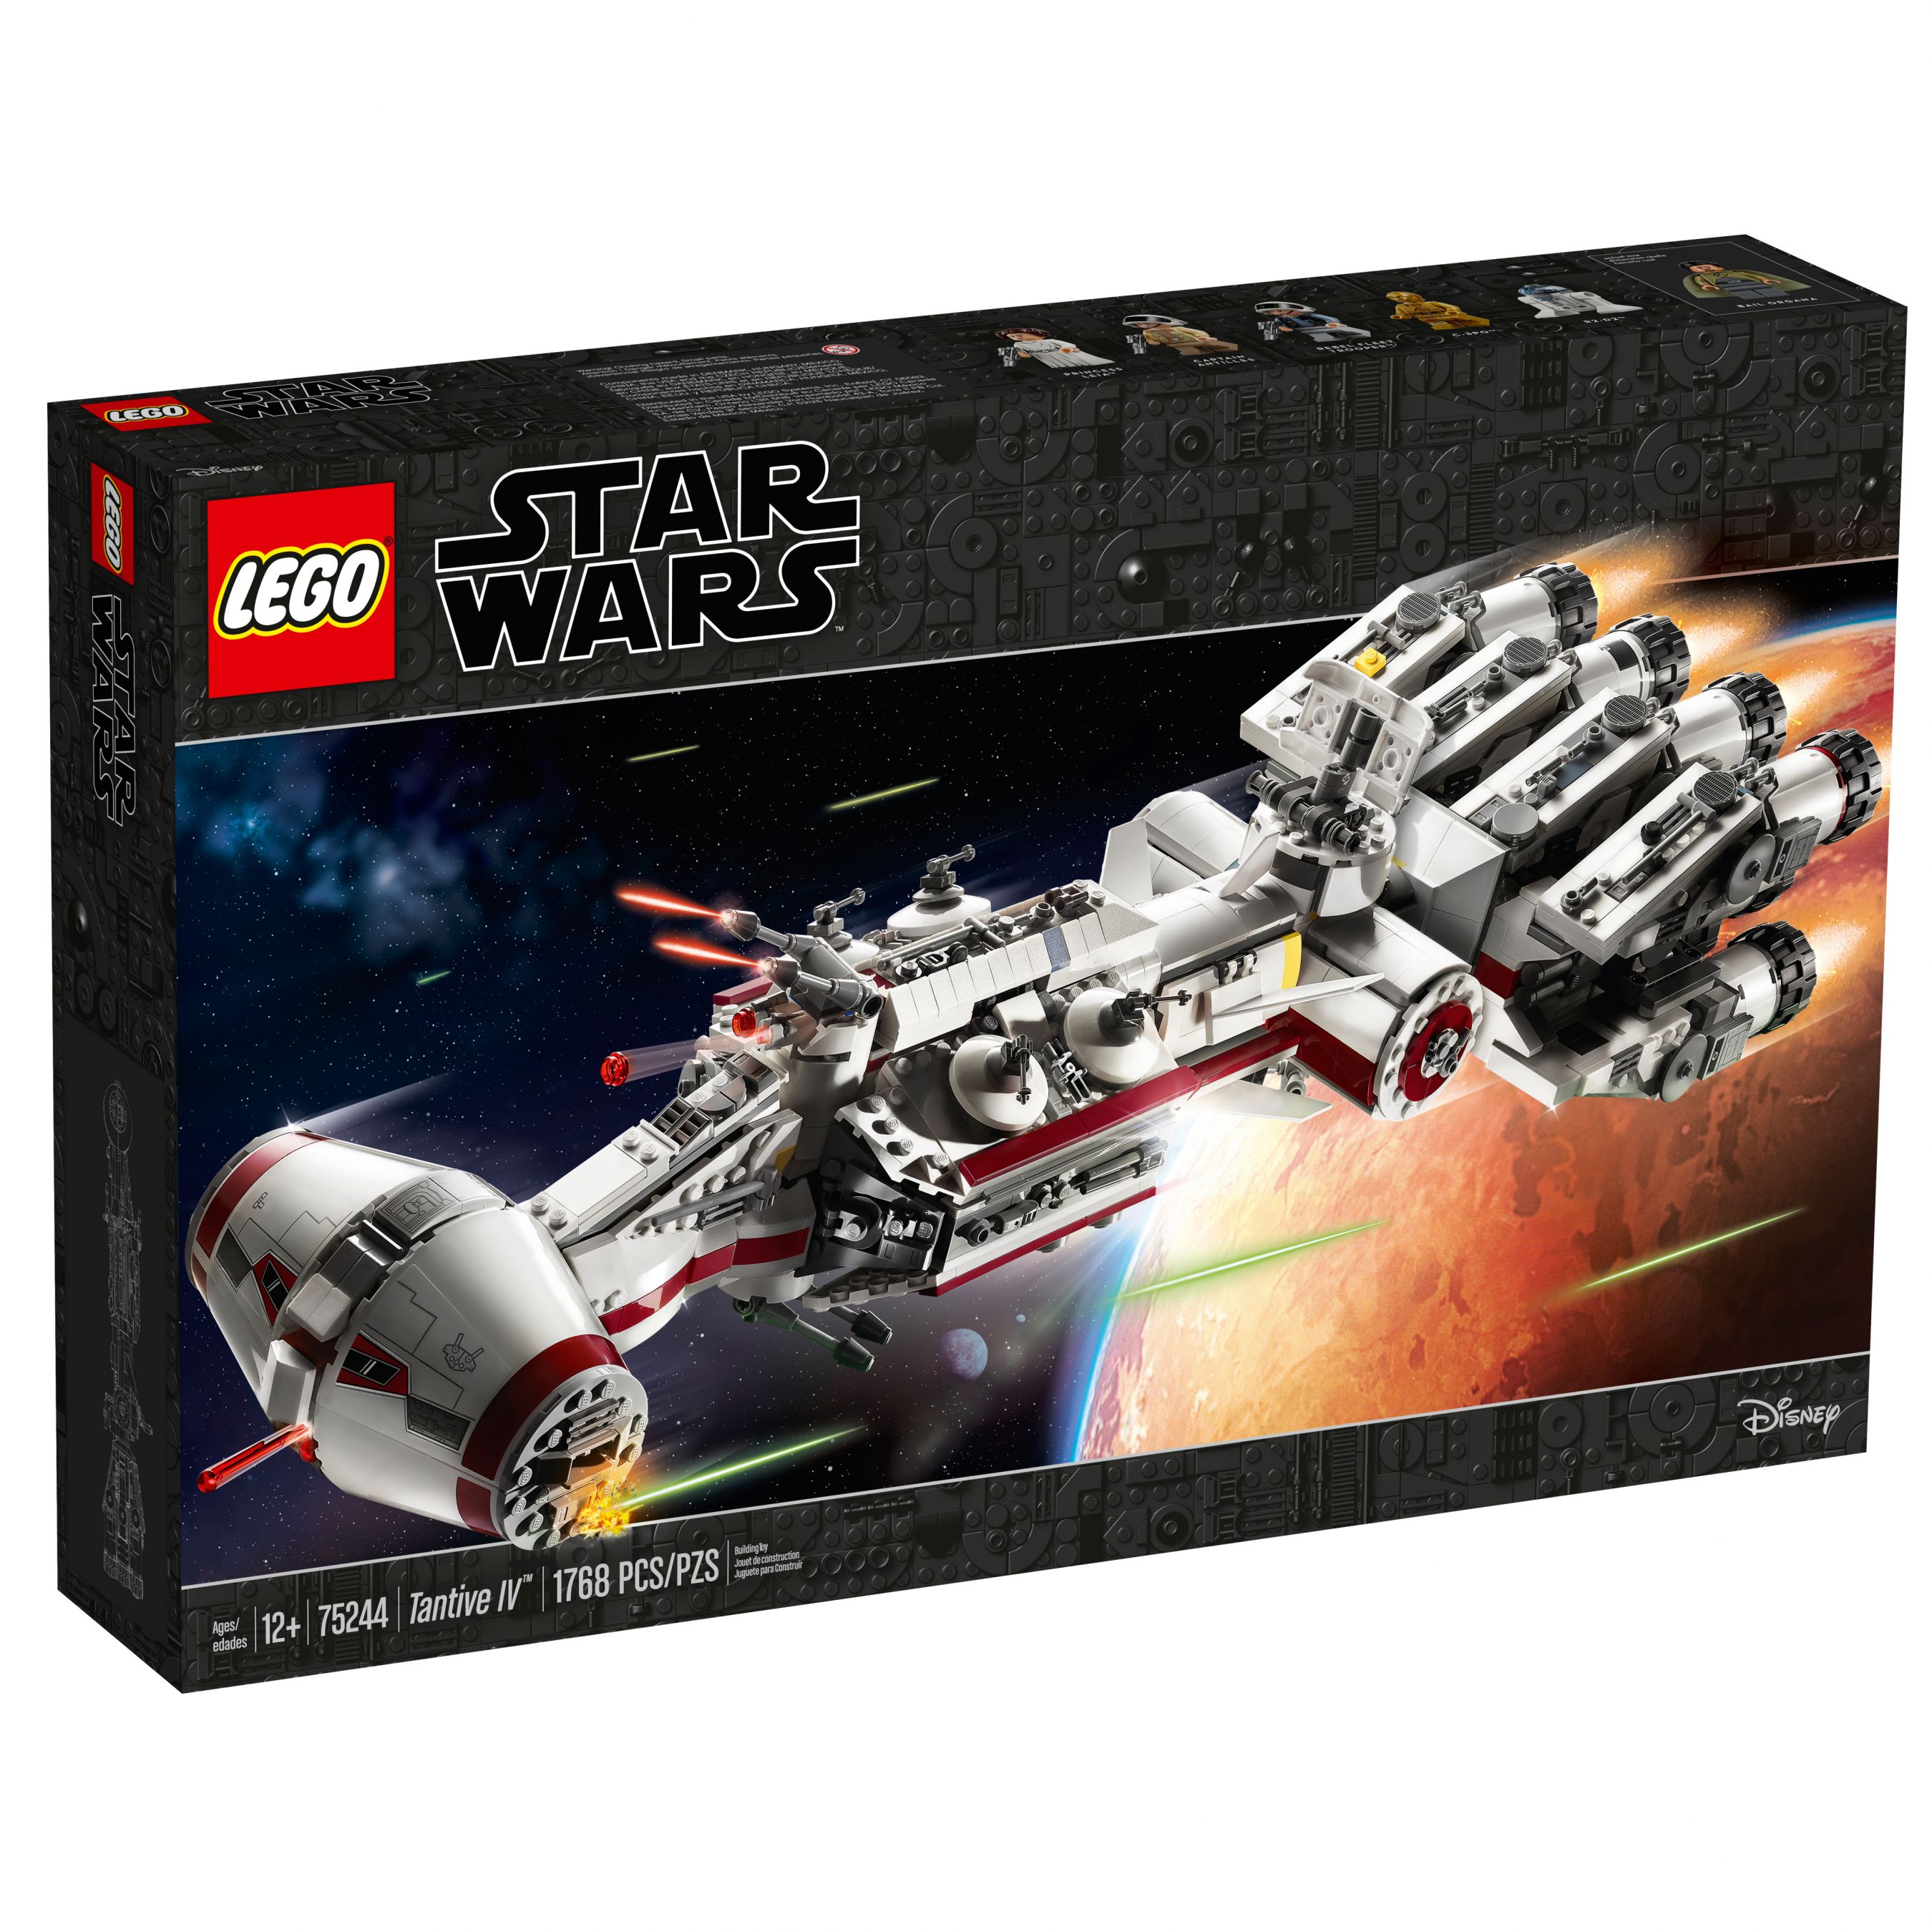 LEGO Star Wars 75244 Tantive IV LEGO_75244_alt1.jpg